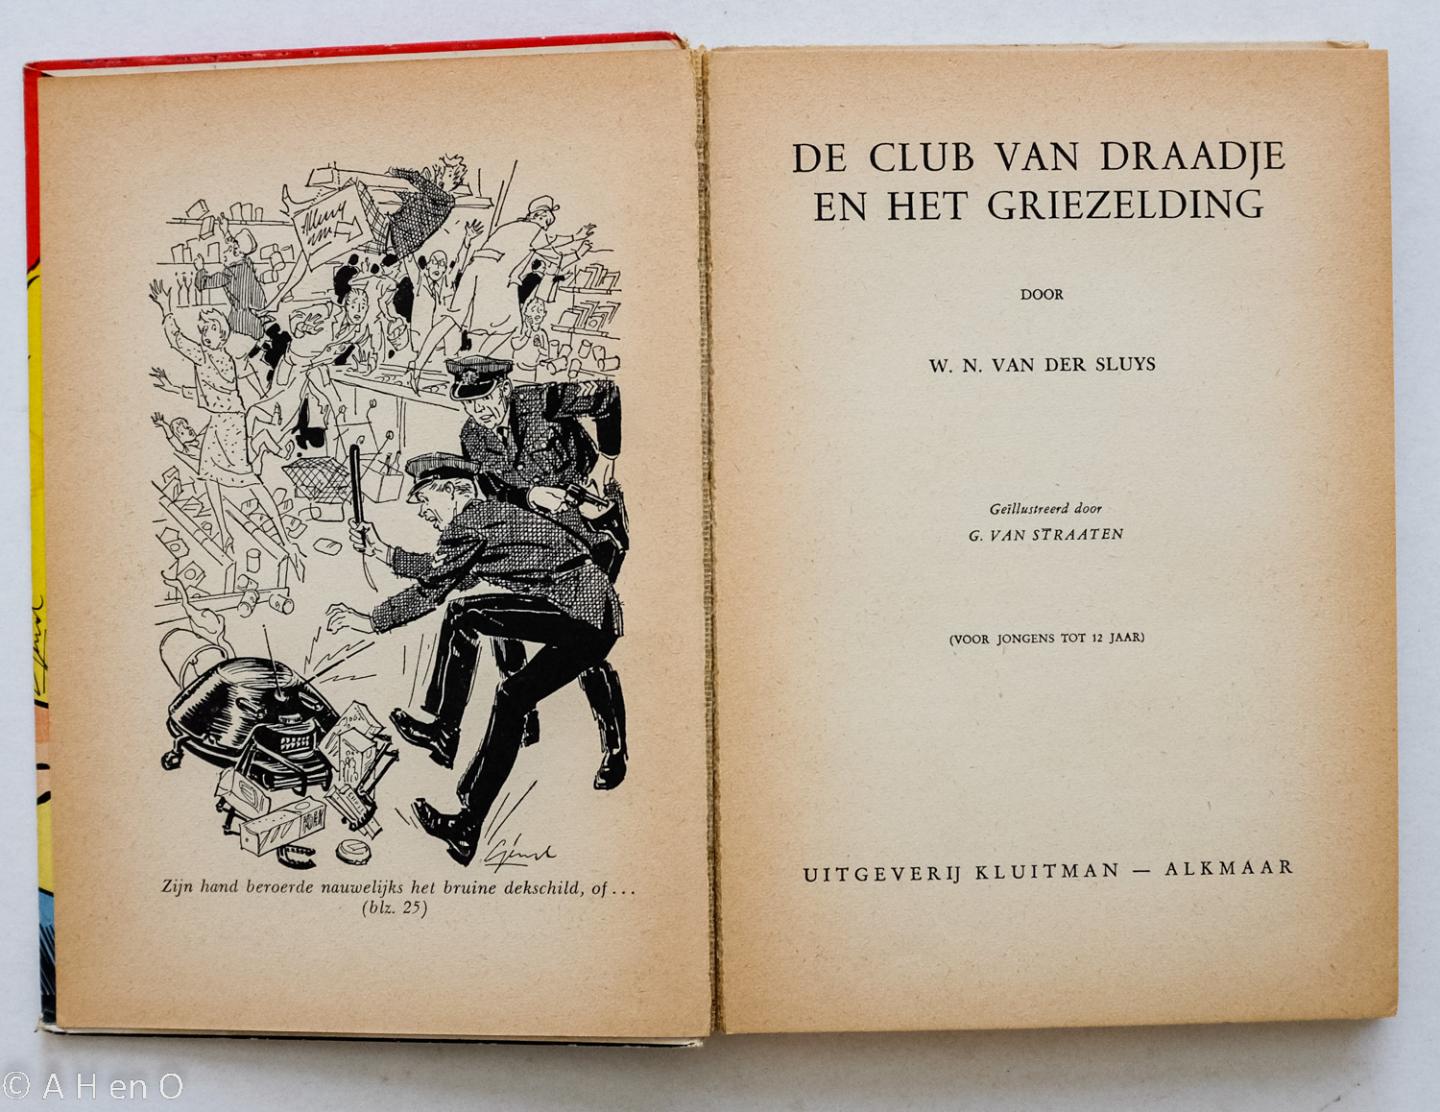 Sluys, W N van der  Jr en Gerard van Straaten - De club van Draadje en het griezelding   - door W.N. van der Sluys ; geïllustreerd door G. van Straaten.